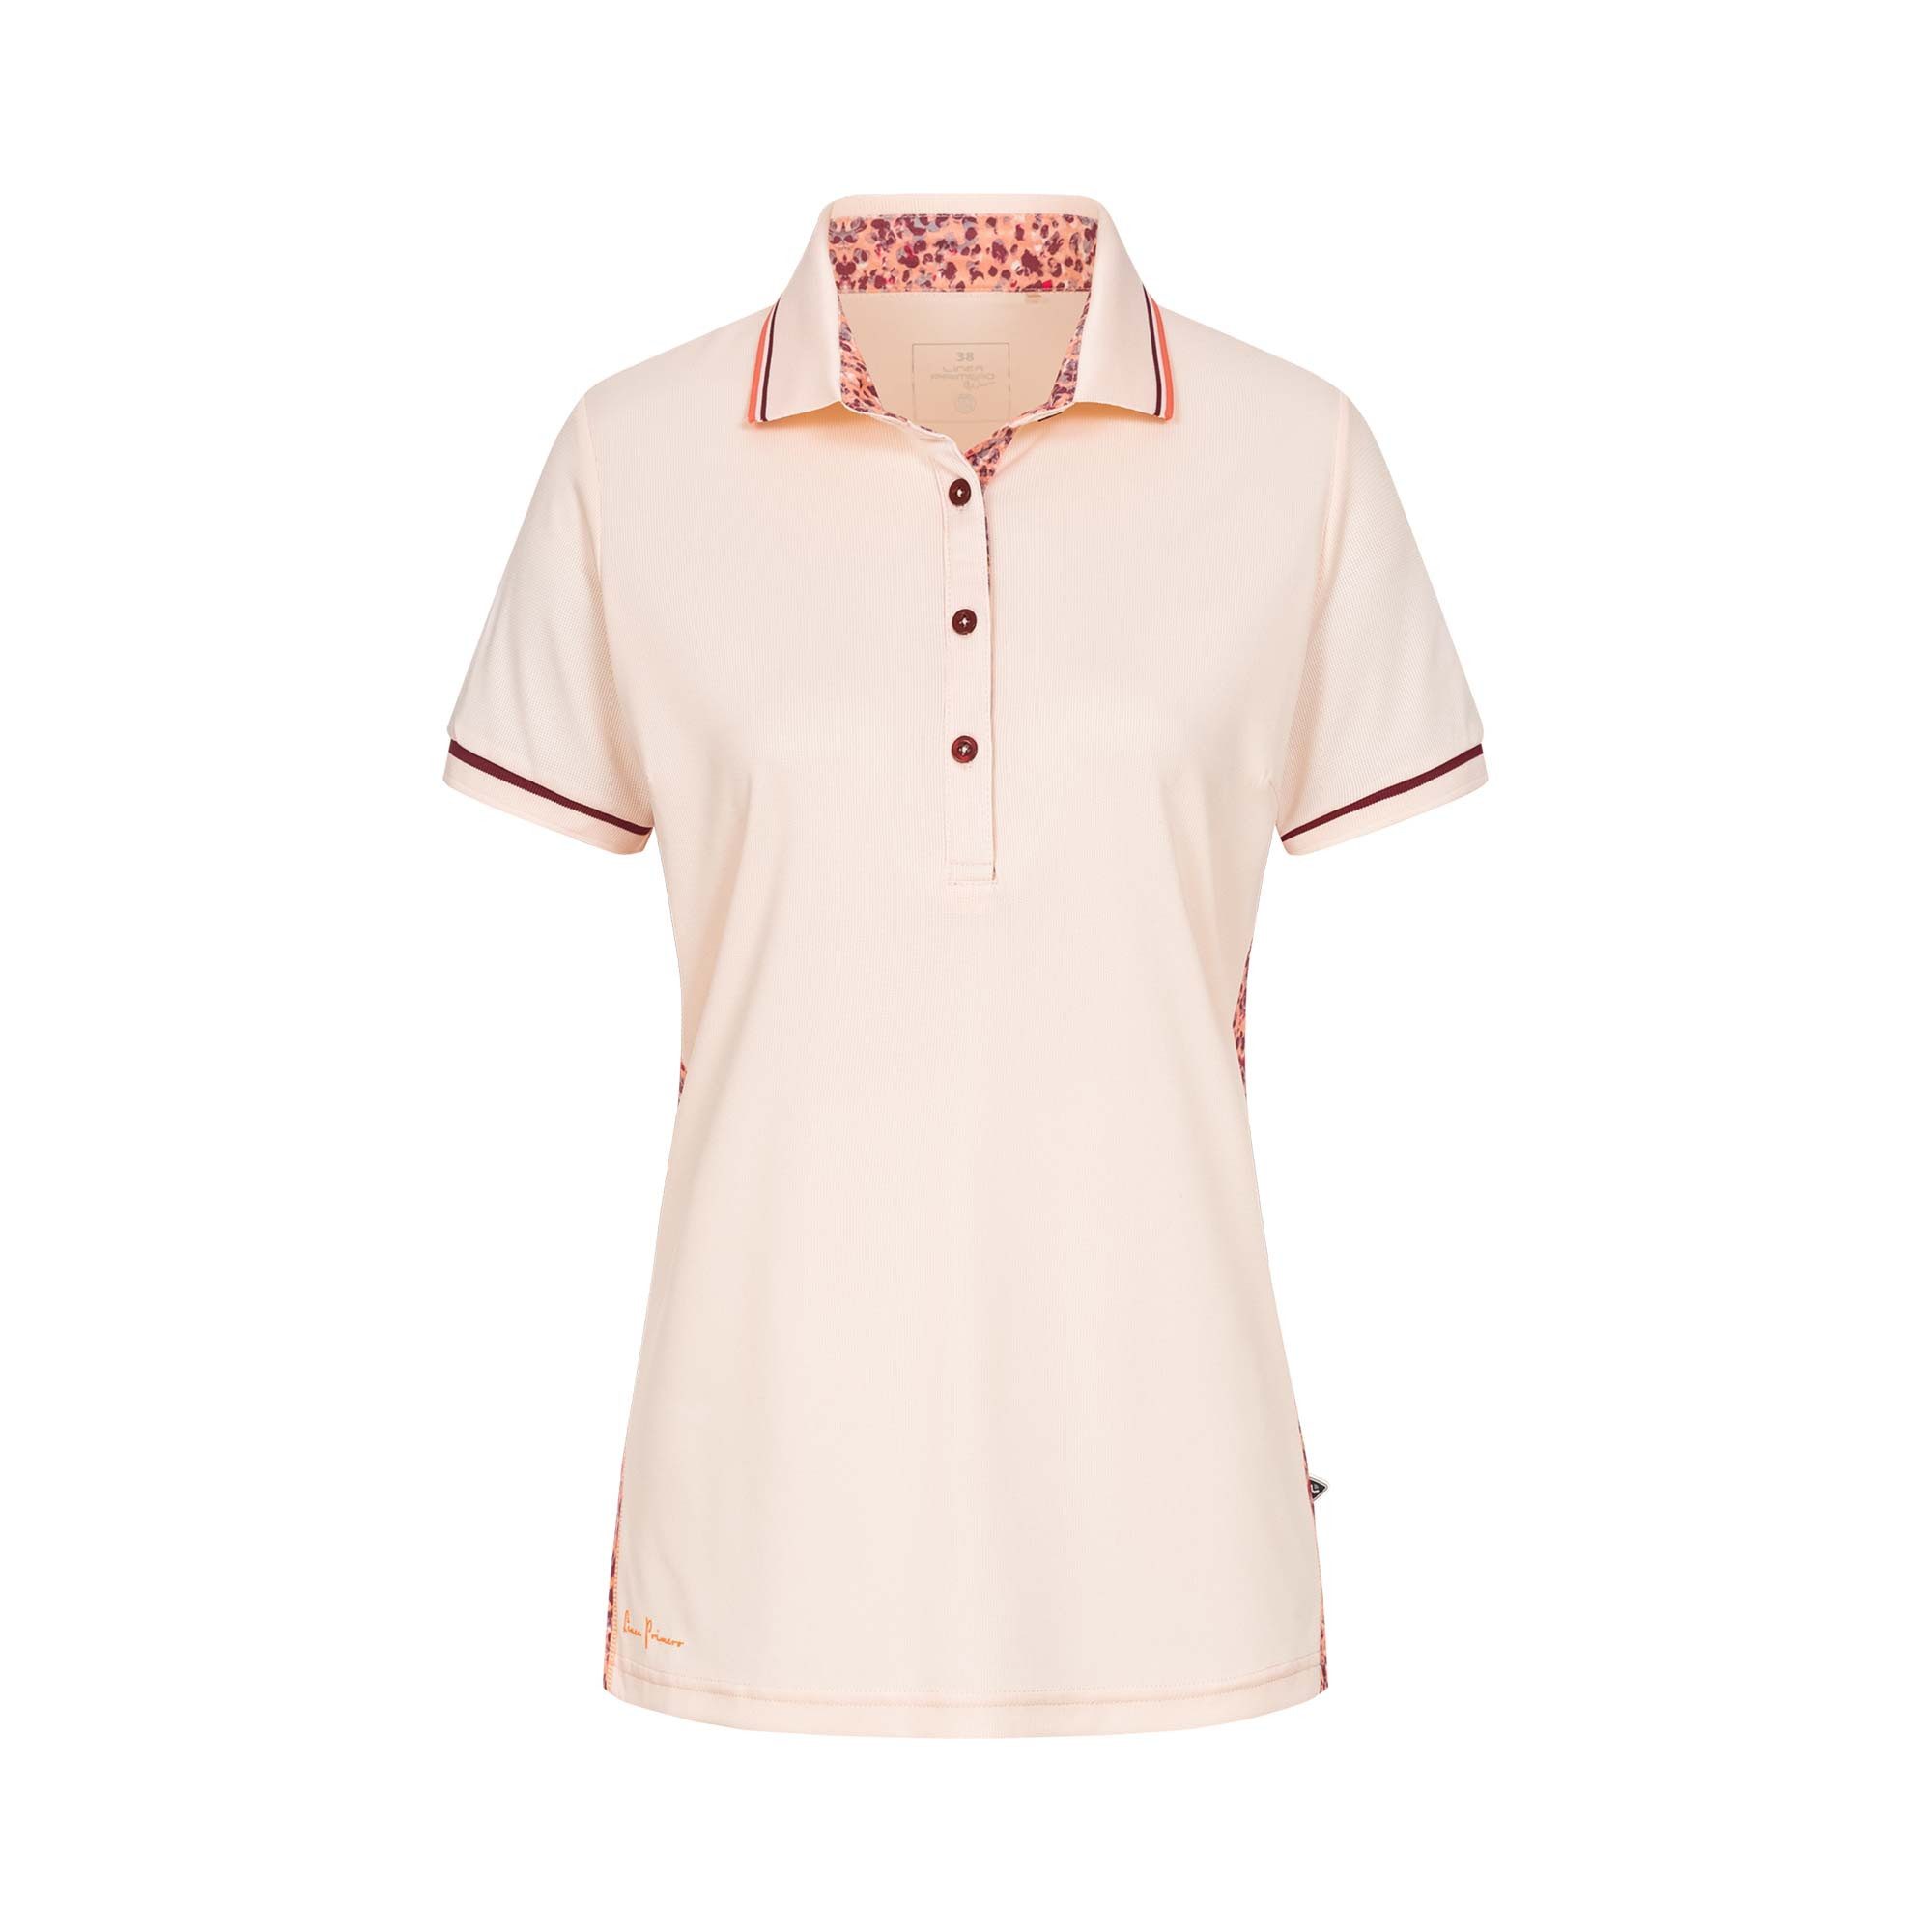 NEW auch erhältlich Großen Active Poloshirt rosa DEPROC Größen WOMEN HEDLEY in